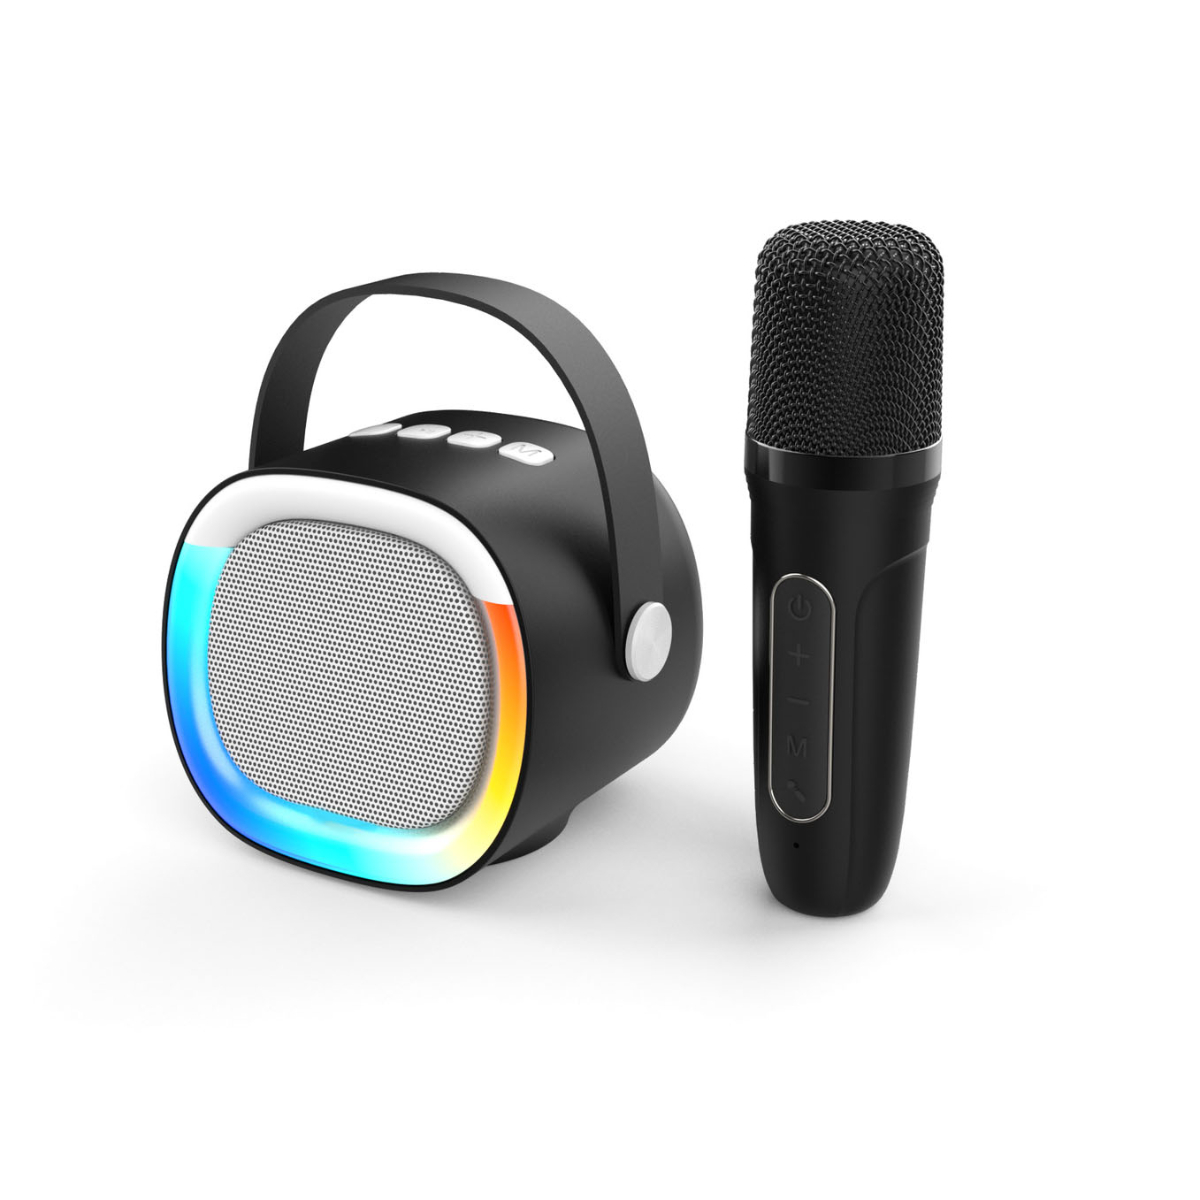 Anruffunktion, Schwarz Sprachansagen, Bluetooth-Lautsprecher, Mikrofon, LED-Bluetooth-Lautsprecher BYTELIKE mit Drahtloser Tragbar